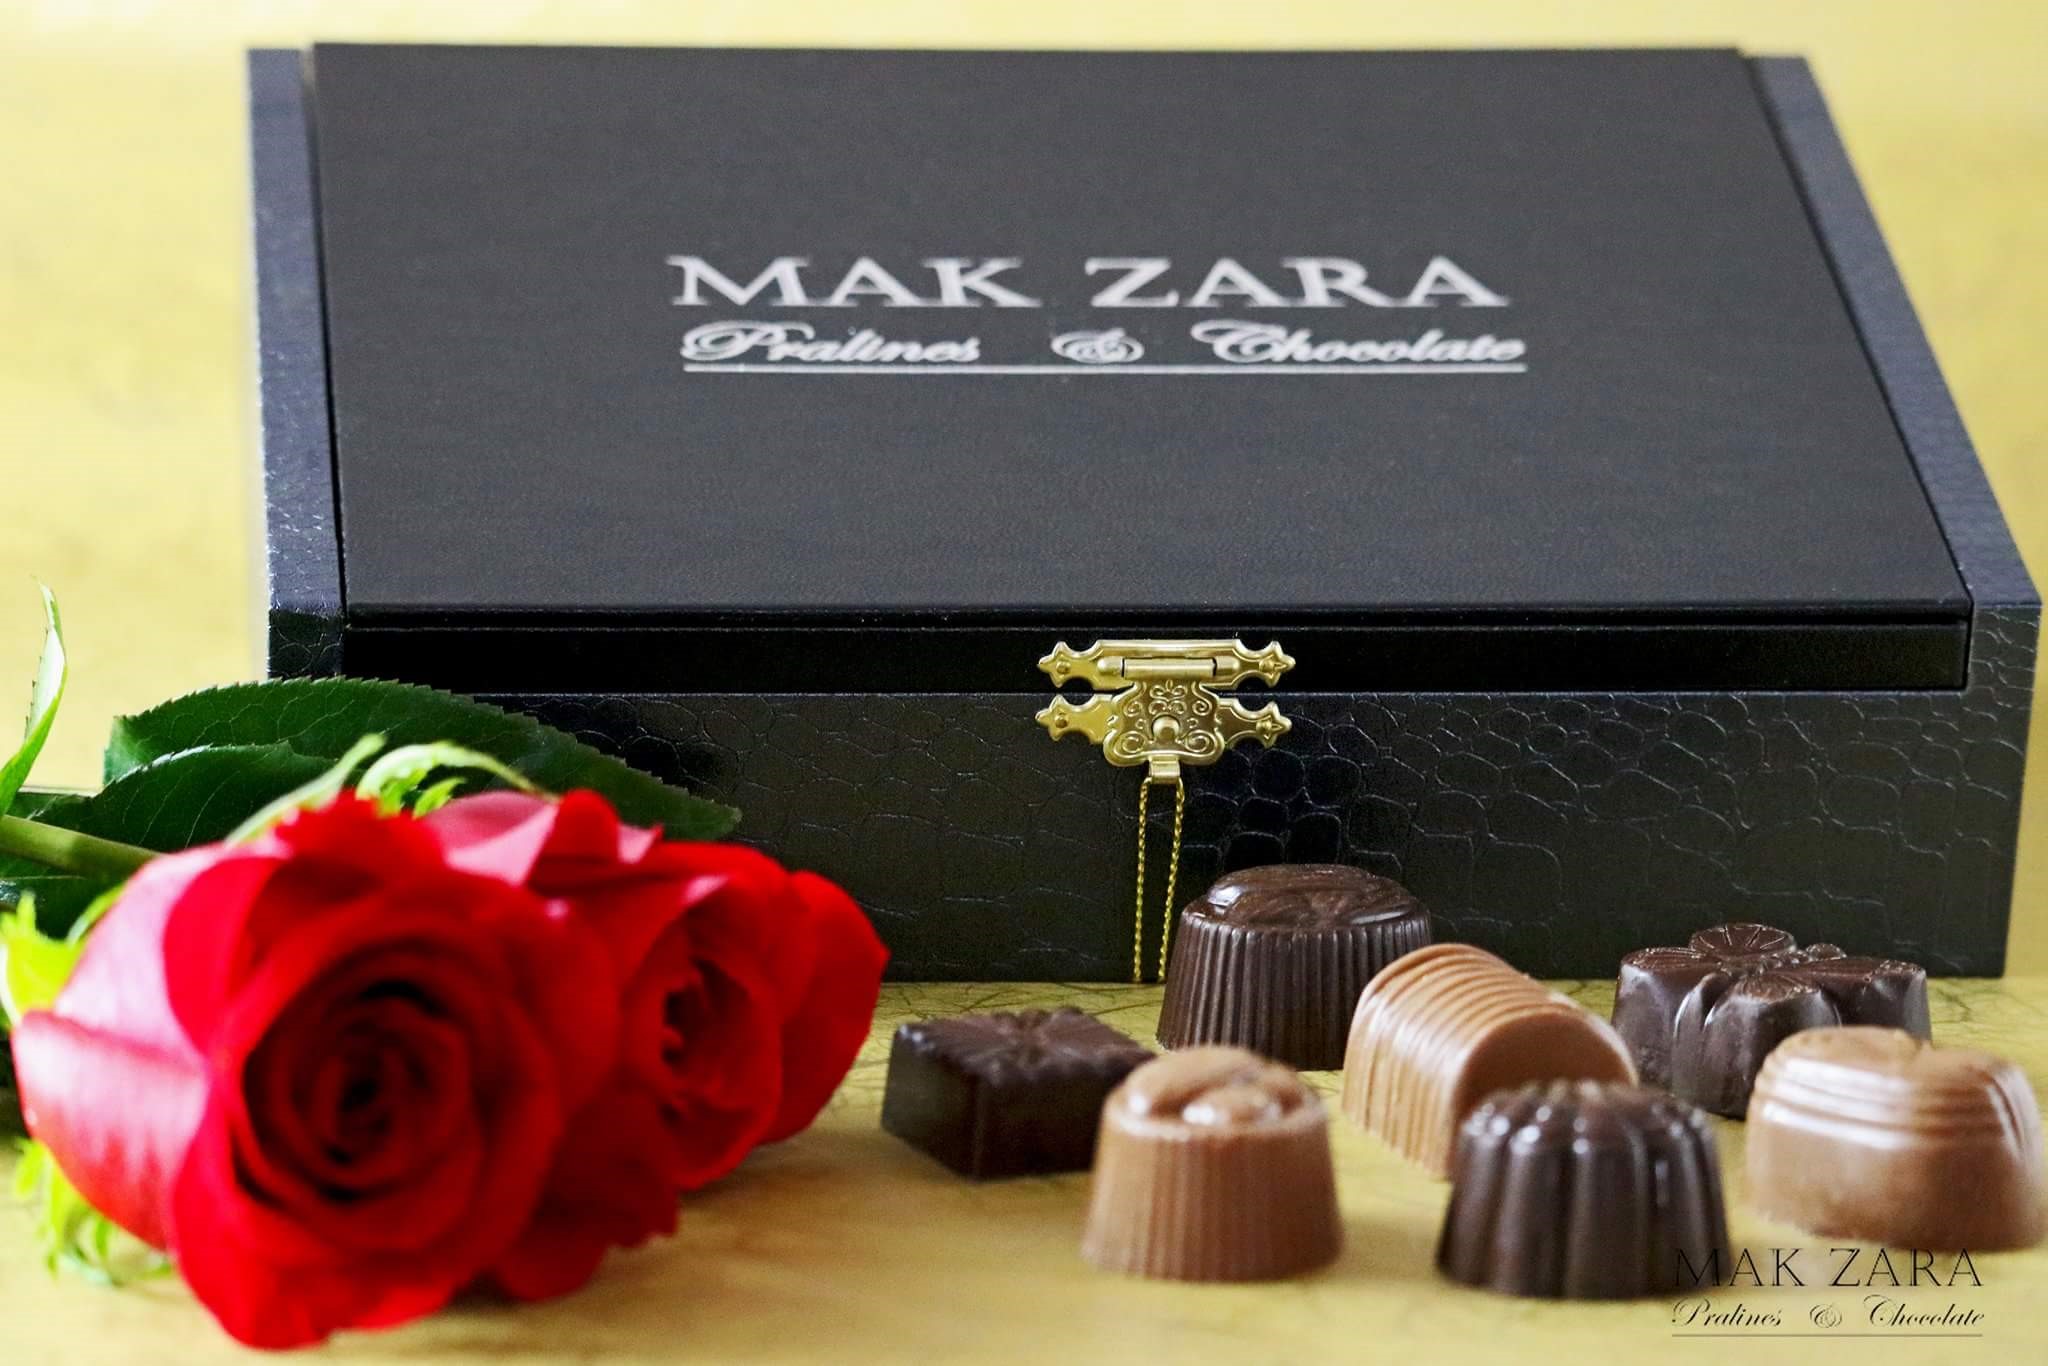 Mak Zara realizira svoj prvi izvoz, čokoladne praline sa suhim šljivama uskoro na tržištu Ujedinjenih Arapskih Emirata